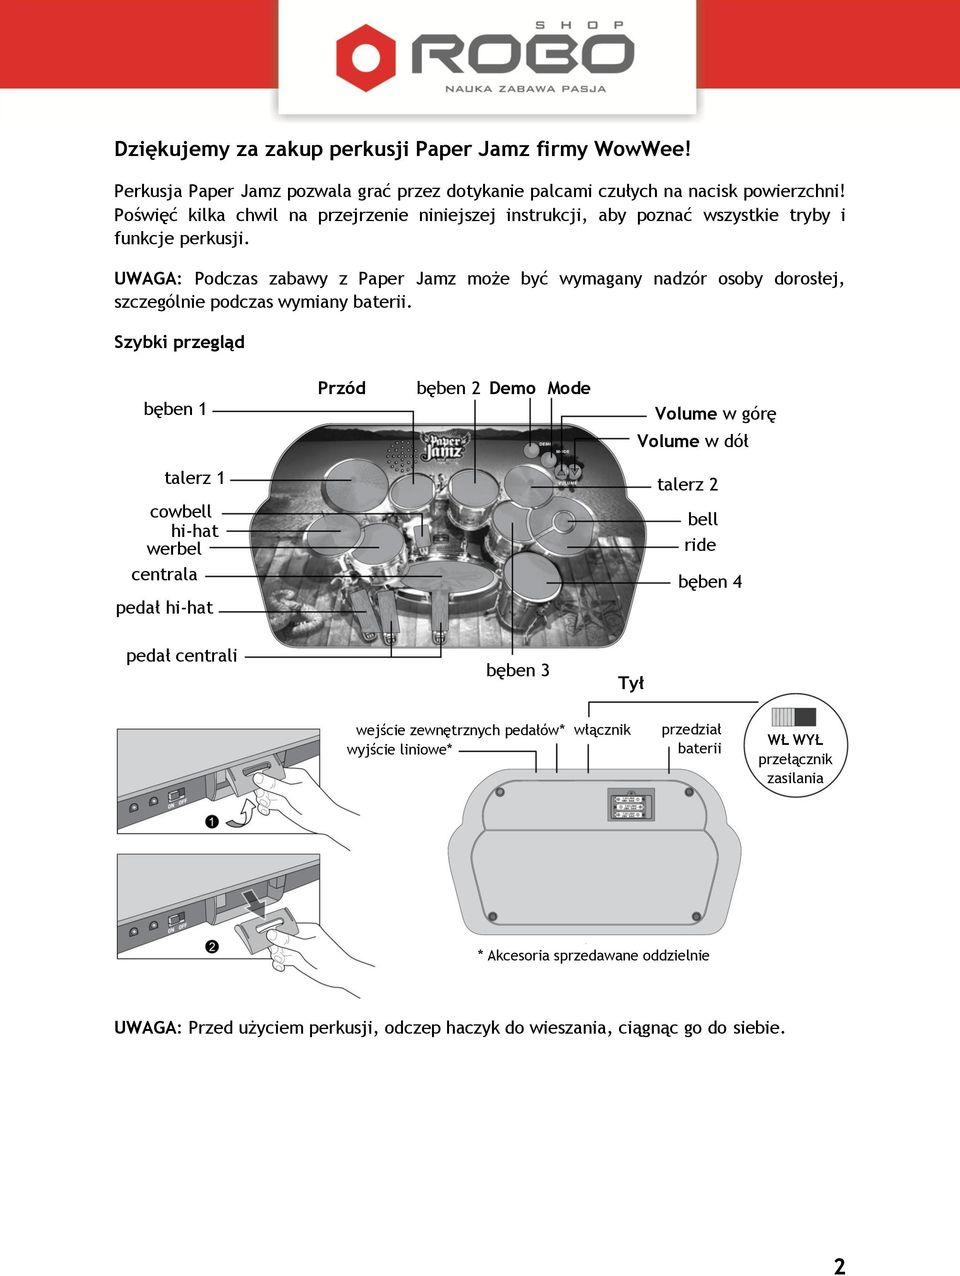 UWAGA: Podczas zabawy z Paper Jamz może być wymagany nadzór osoby dorosłej, szczególnie podczas wymiany baterii.